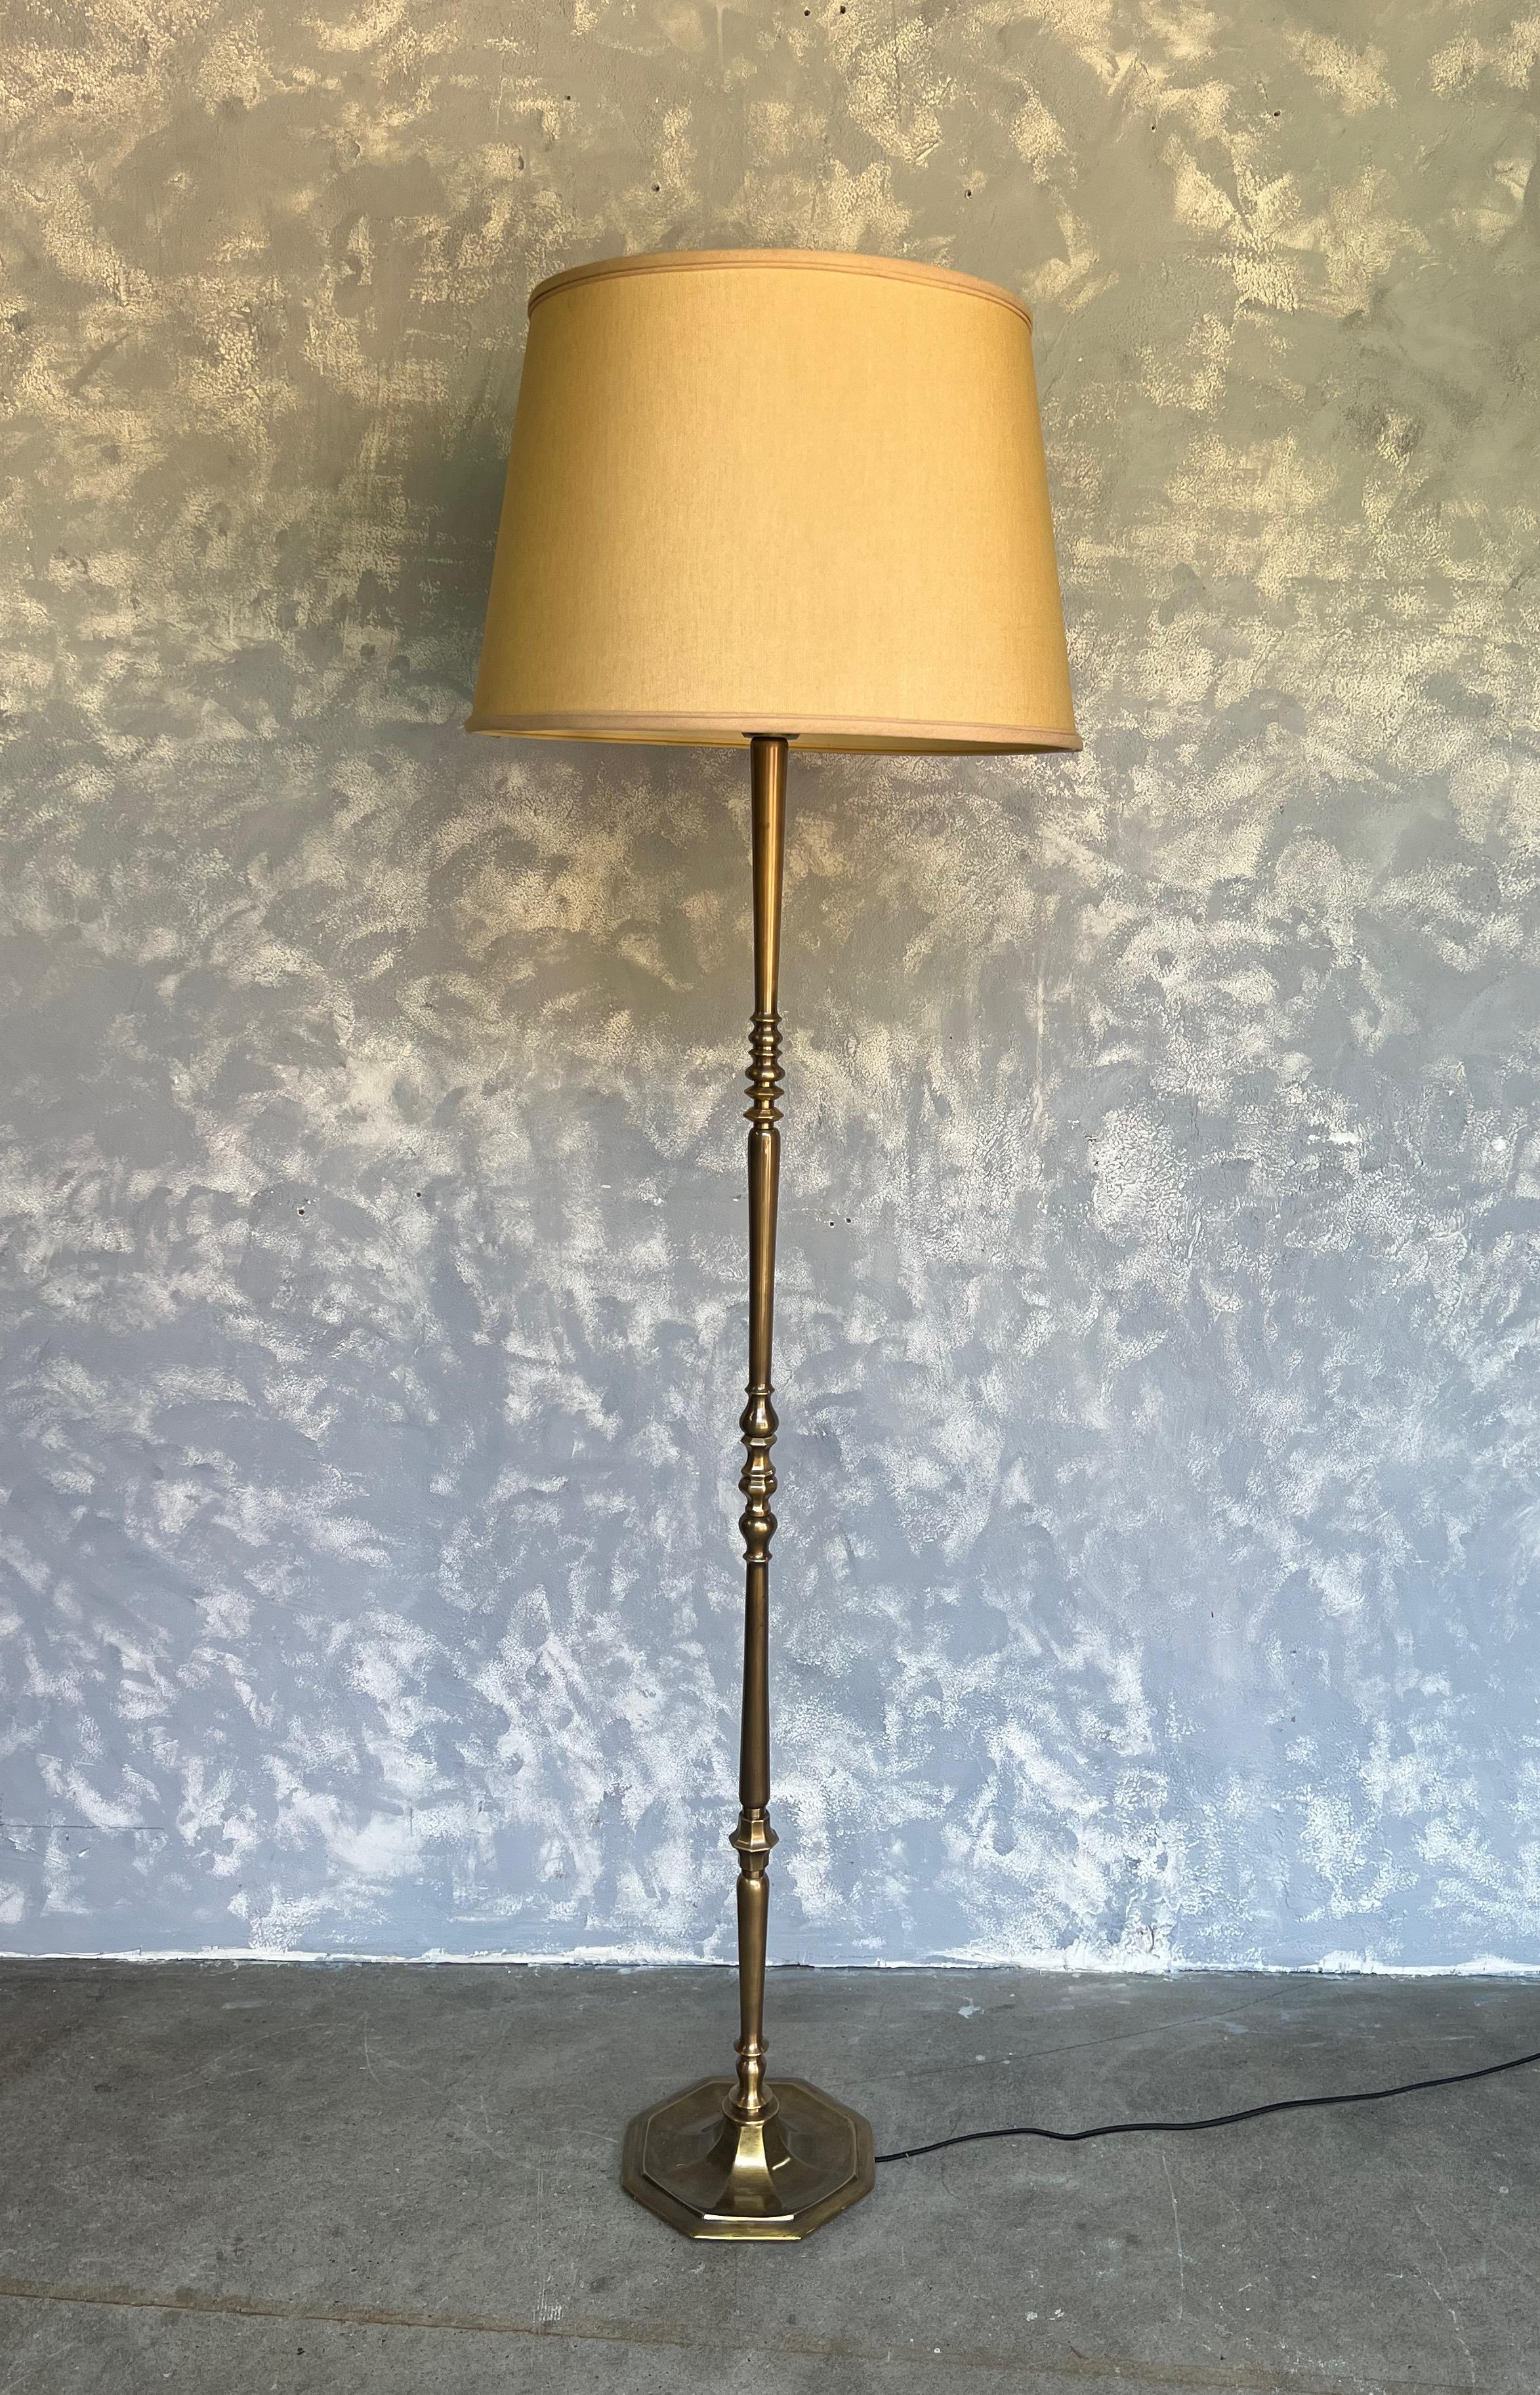 Ce lampadaire impressionnant provient de France, vers les années 1940, et est un magnifique mélange de laiton et de bronze. La lampe présente des éléments tournés et moulés qui sont élégamment assemblés sur une base hexagonale, assurant la stabilité